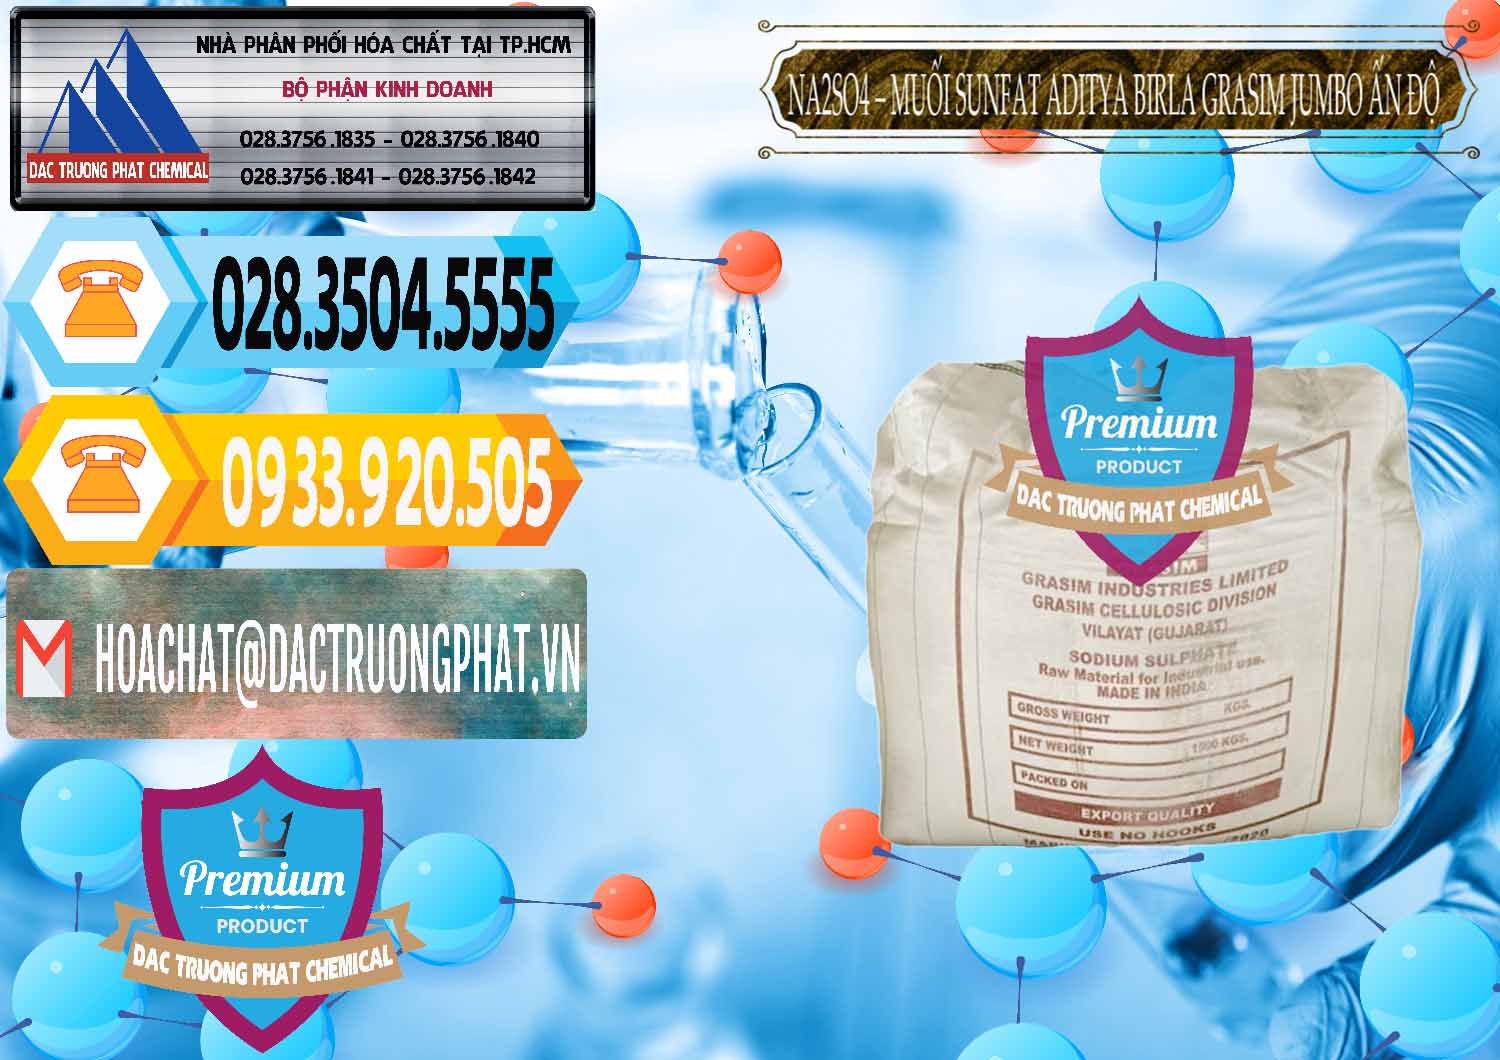 Cty chuyên nhập khẩu ( bán ) Sodium Sulphate - Muối Sunfat Na2SO4 Jumbo Bành Aditya Birla Grasim Ấn Độ India - 0357 - Cty phân phối - nhập khẩu hóa chất tại TP.HCM - hoachattayrua.net